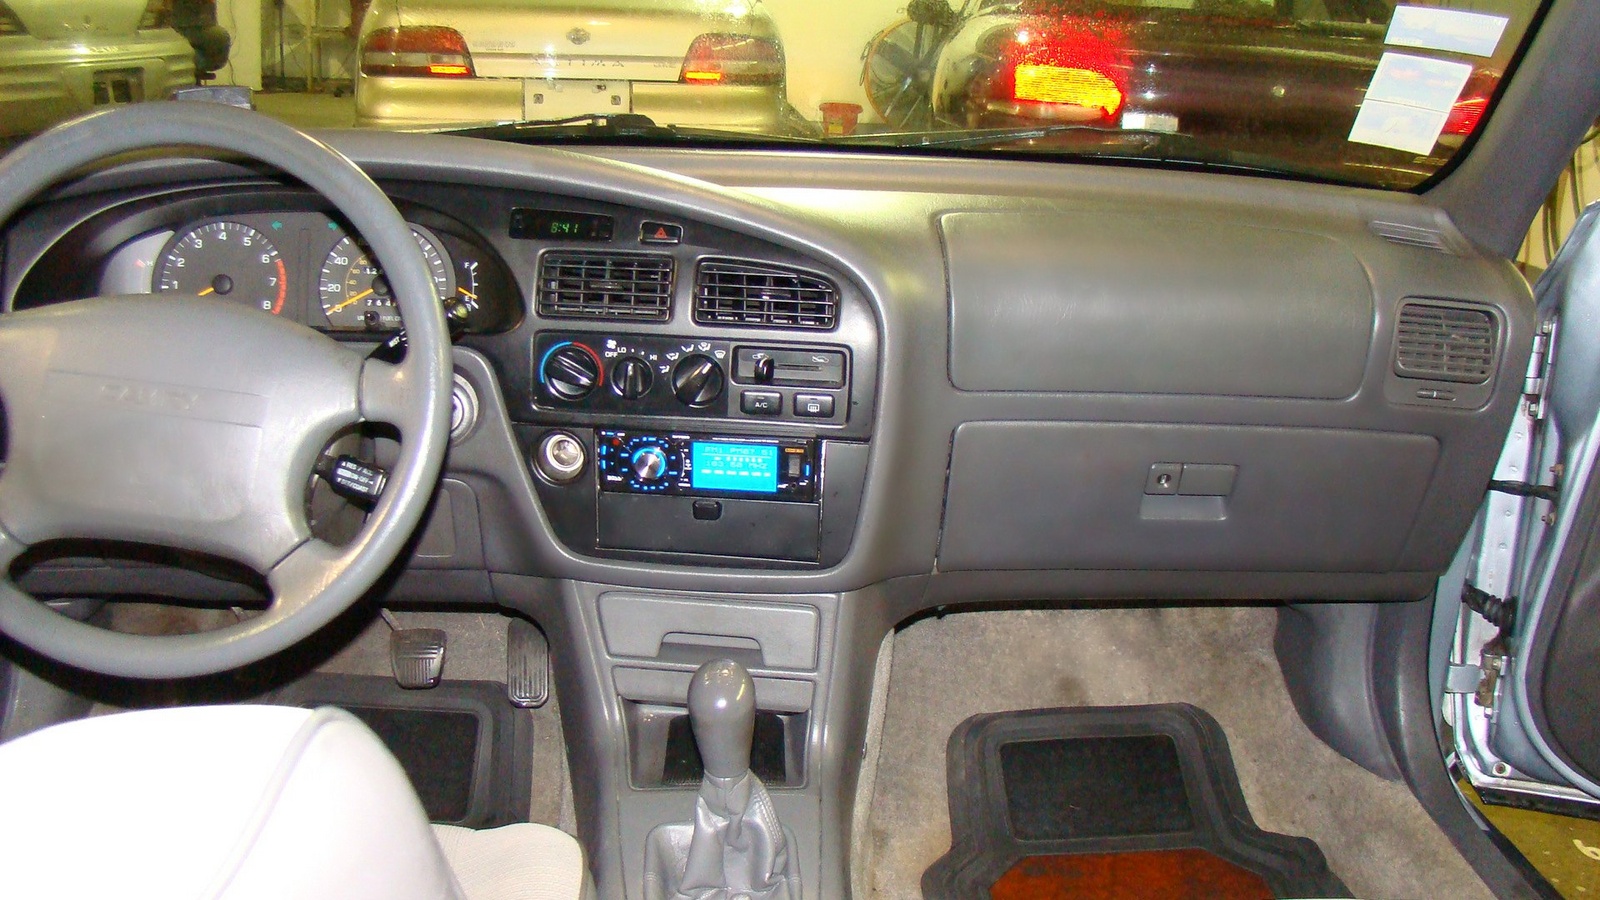 1995 camry interior doors handle